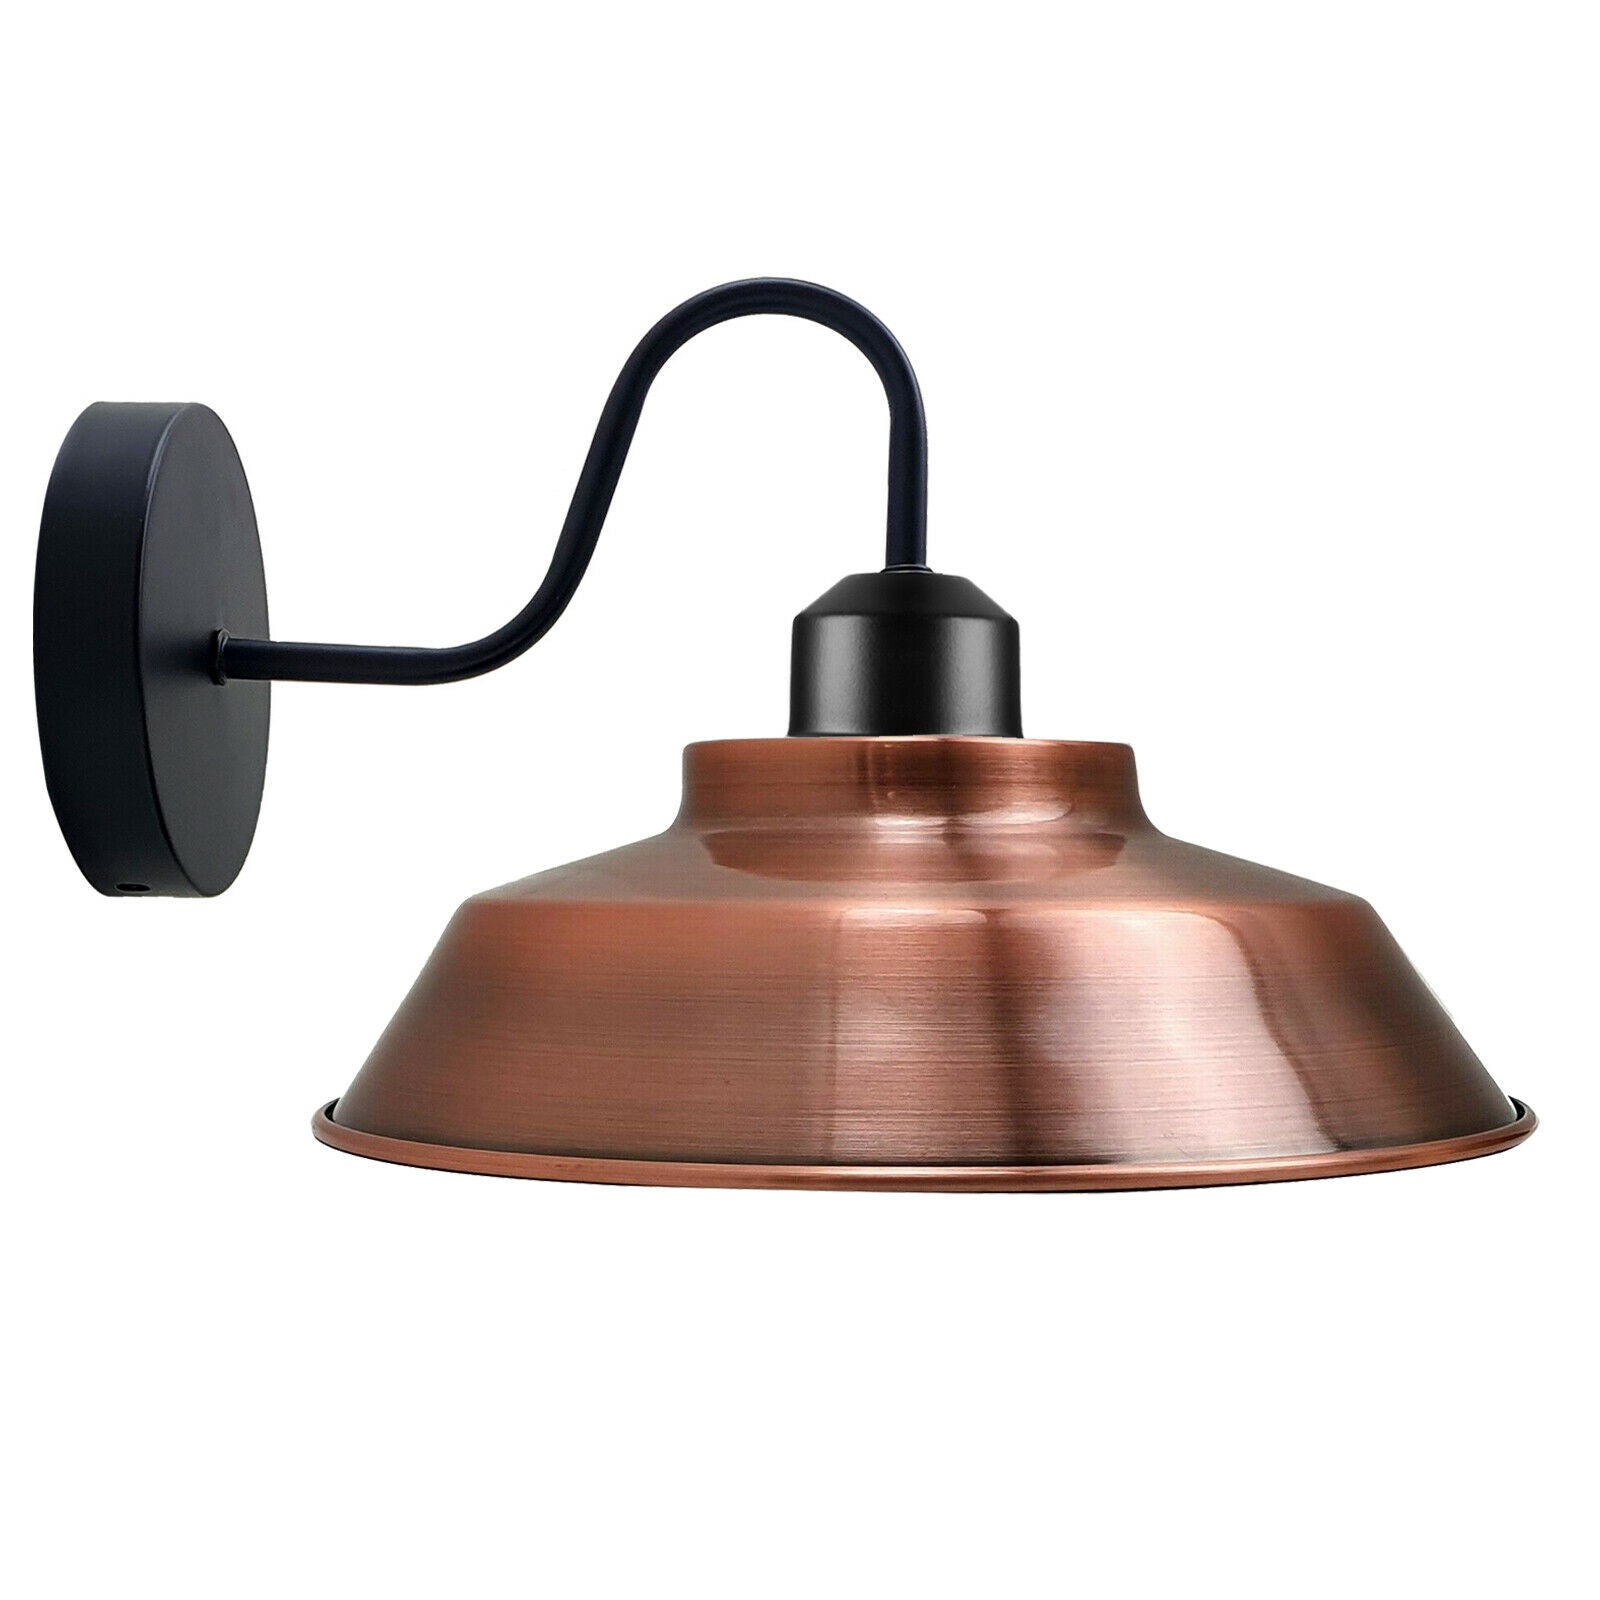 Billede af Retro industrielle væglamper Fittings E27 Indendørs Lampe Metal Shell Shade Kobber